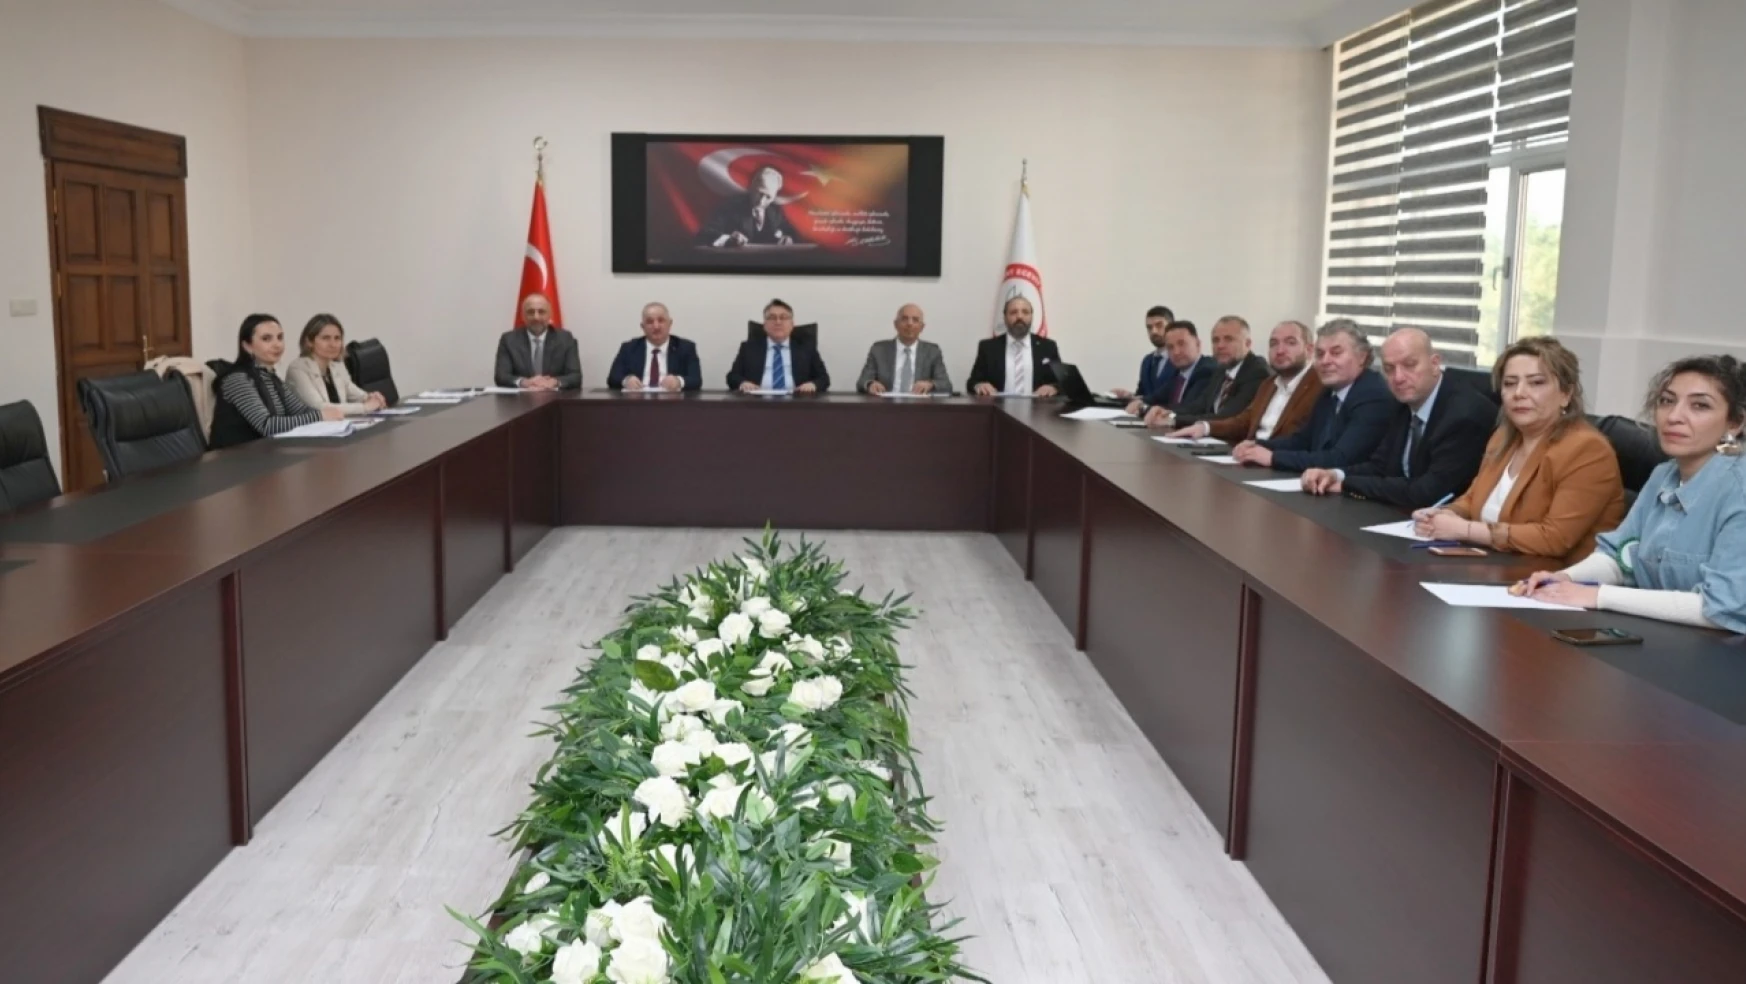 Zonguldak Teknopark'ın Olağan Genel Kurul toplantısı gerçekleşti